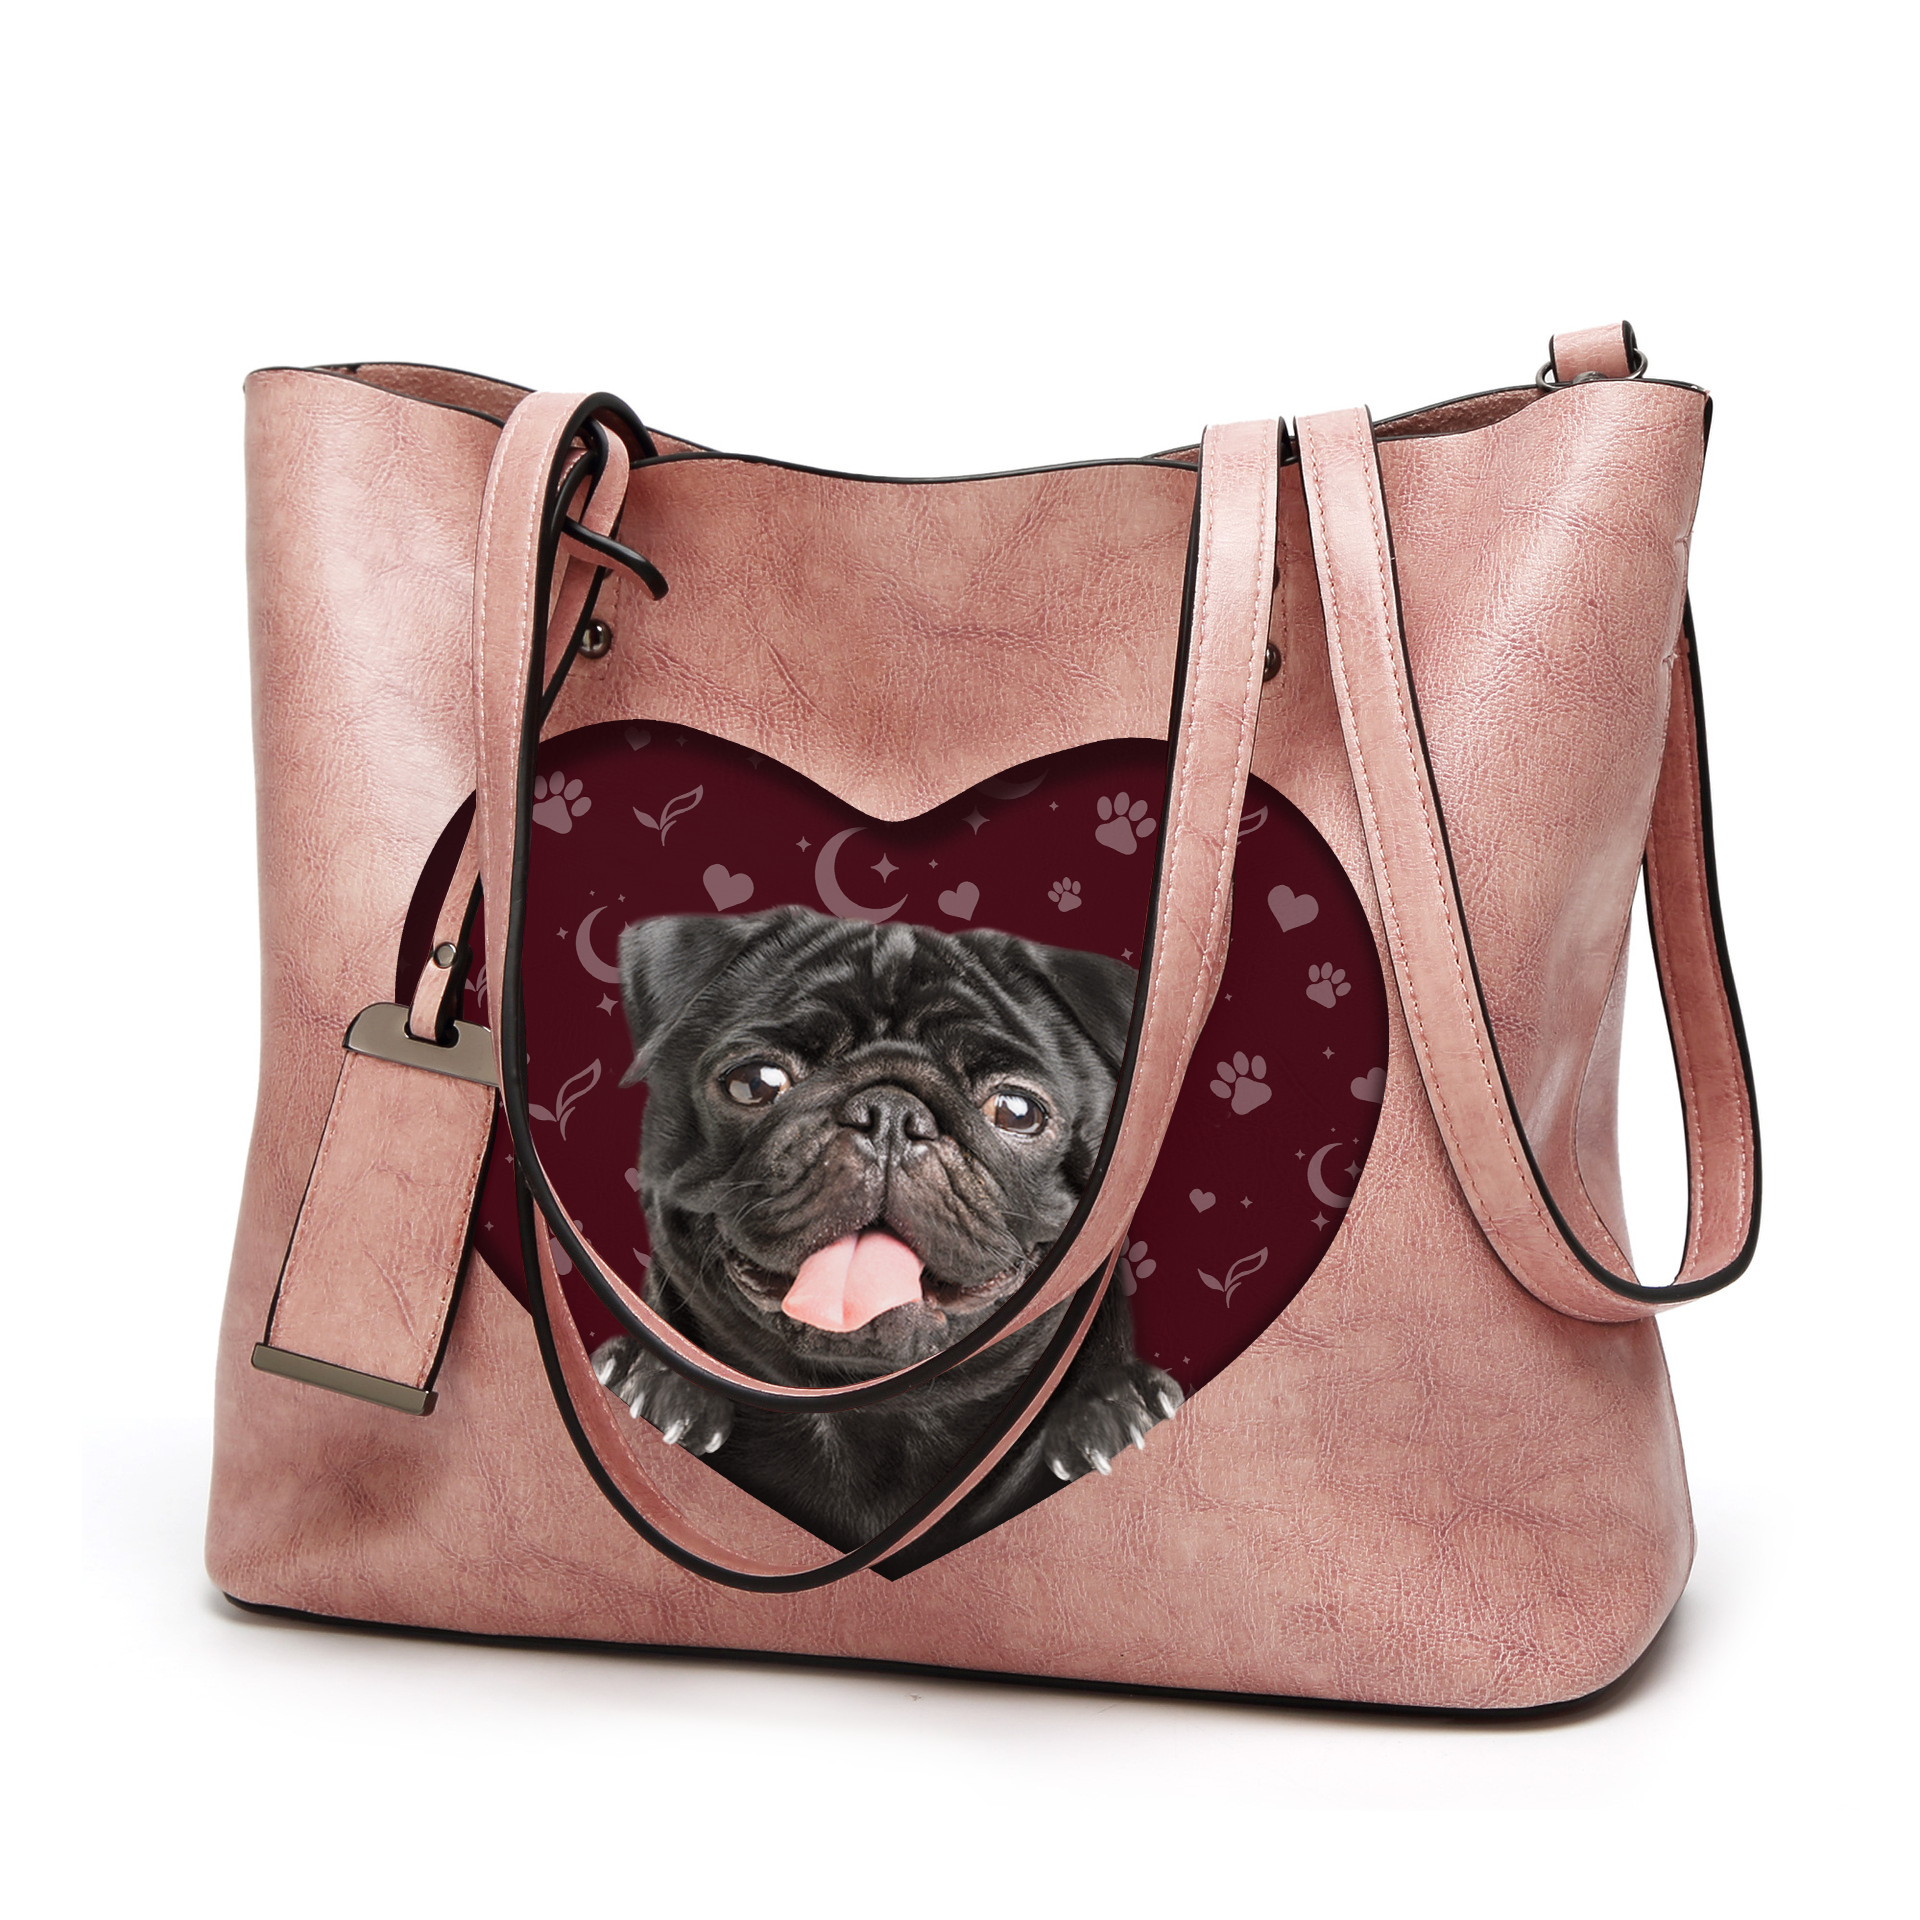 I Know I'm Cute - Pug Glamour Handbag V2 - 8